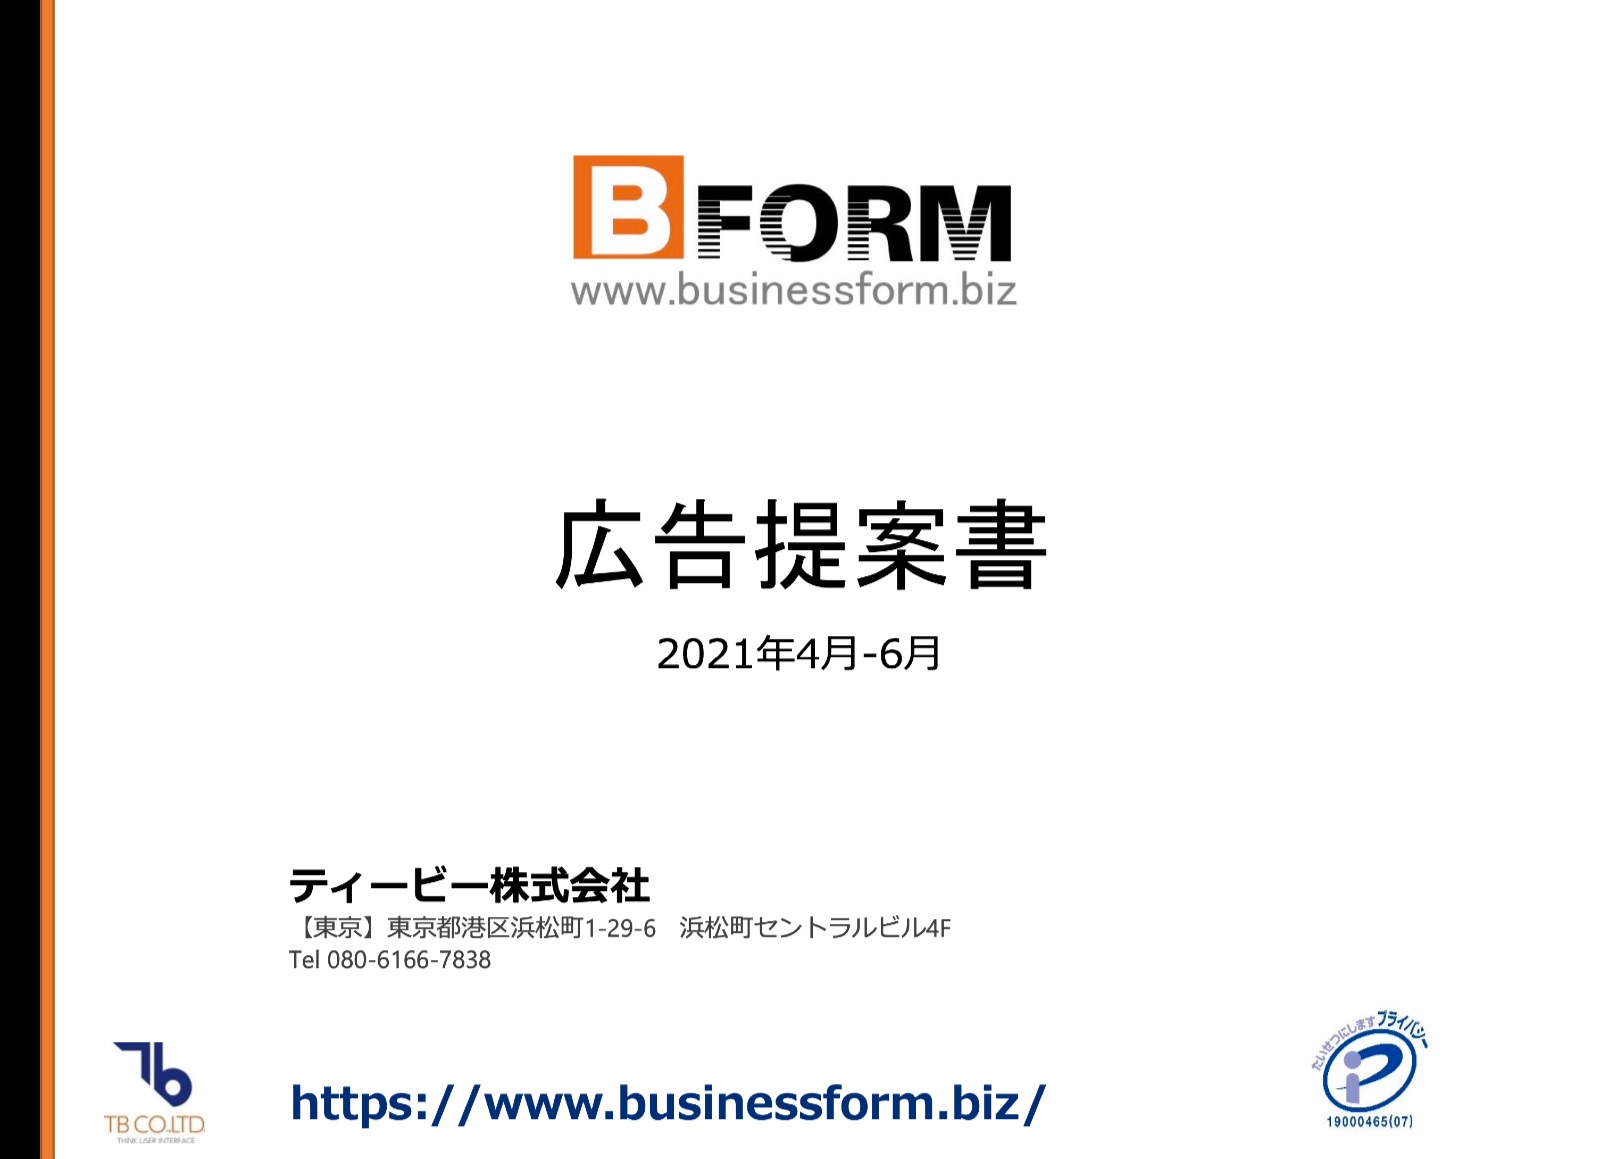 ビジネス文書テンプレート イラスト 写真素材を提供するwebサイト B Form Biz 媒体資料 広告掲載 広告資料 資料jp